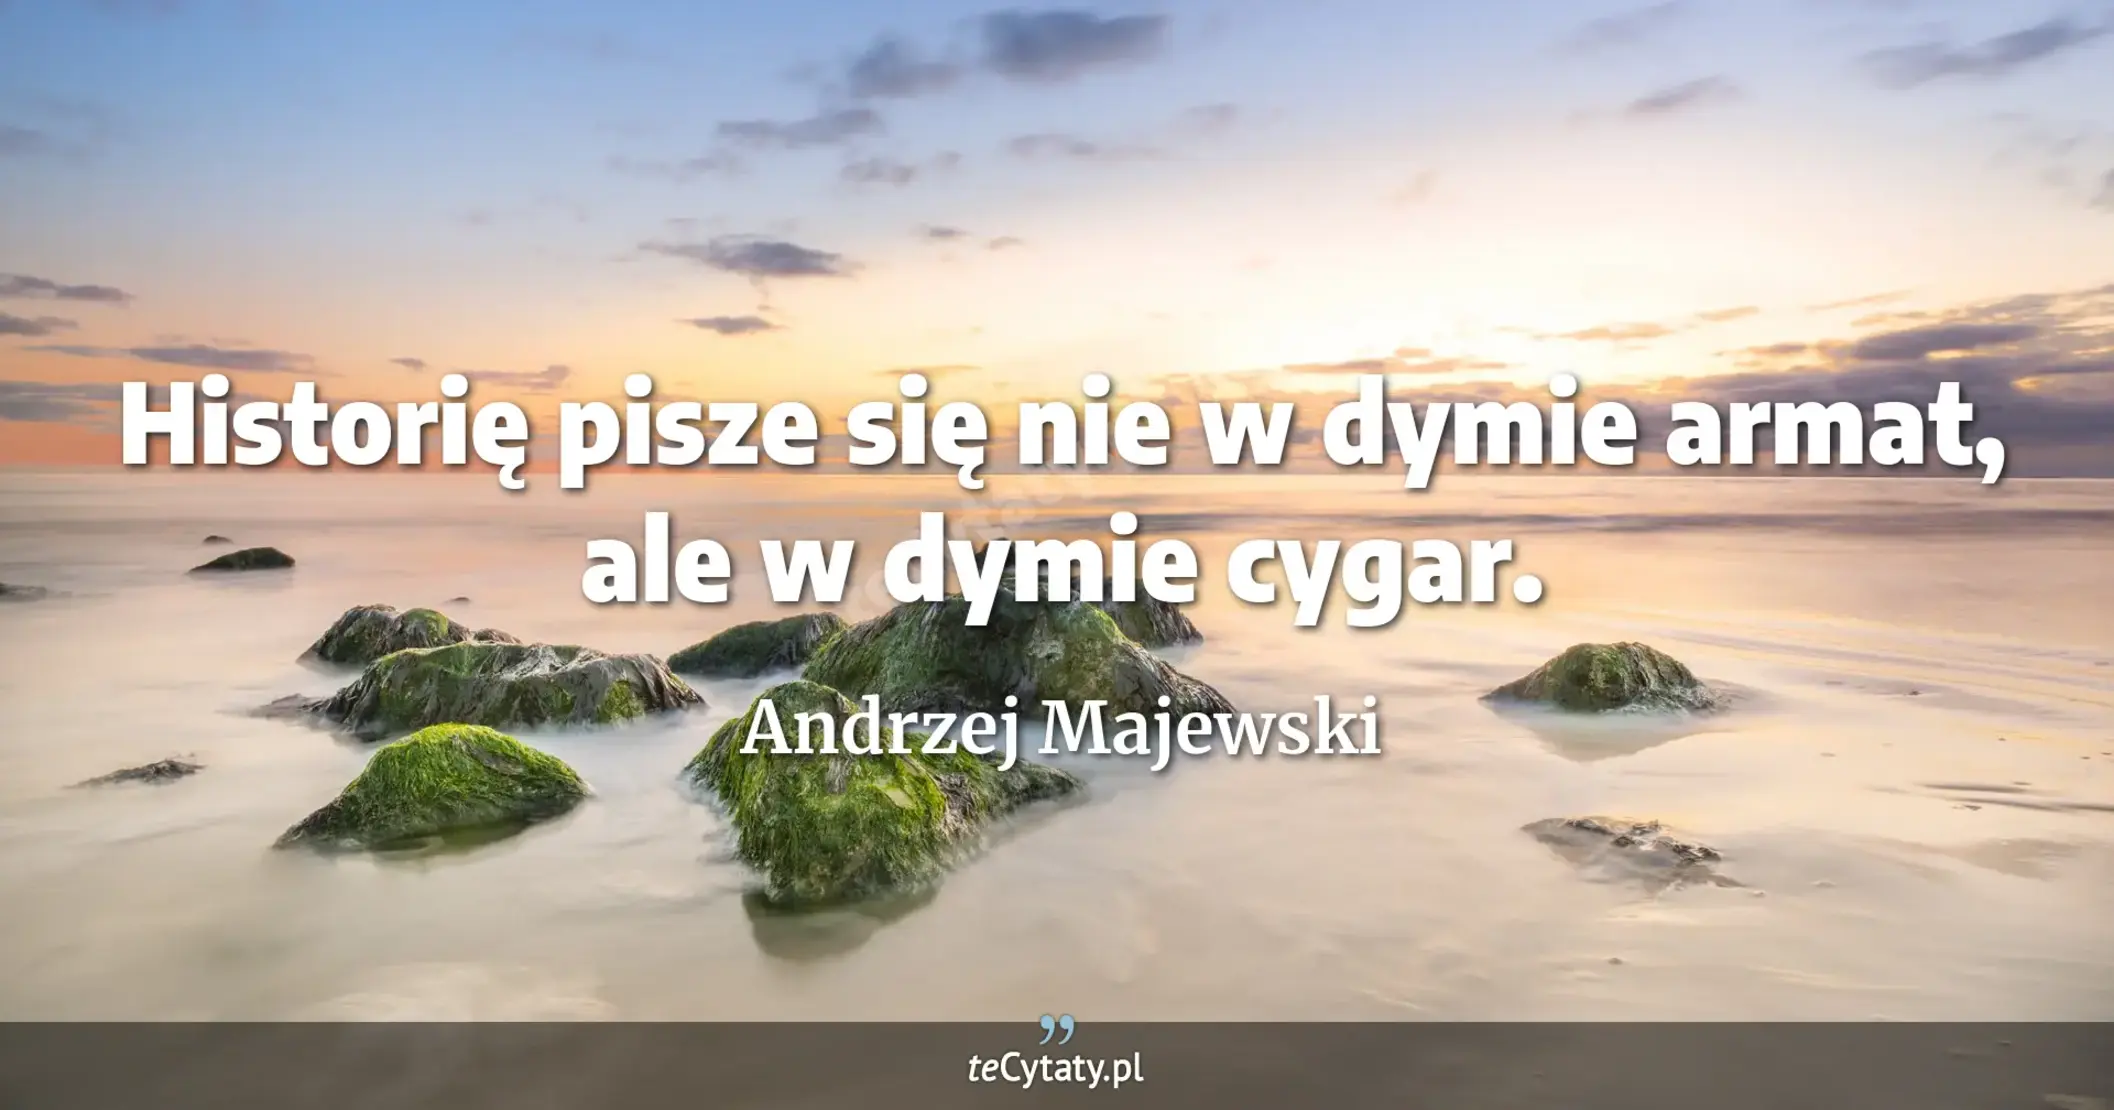 Historię pisze się nie w dymie armat, ale w dymie cygar. - Andrzej Majewski